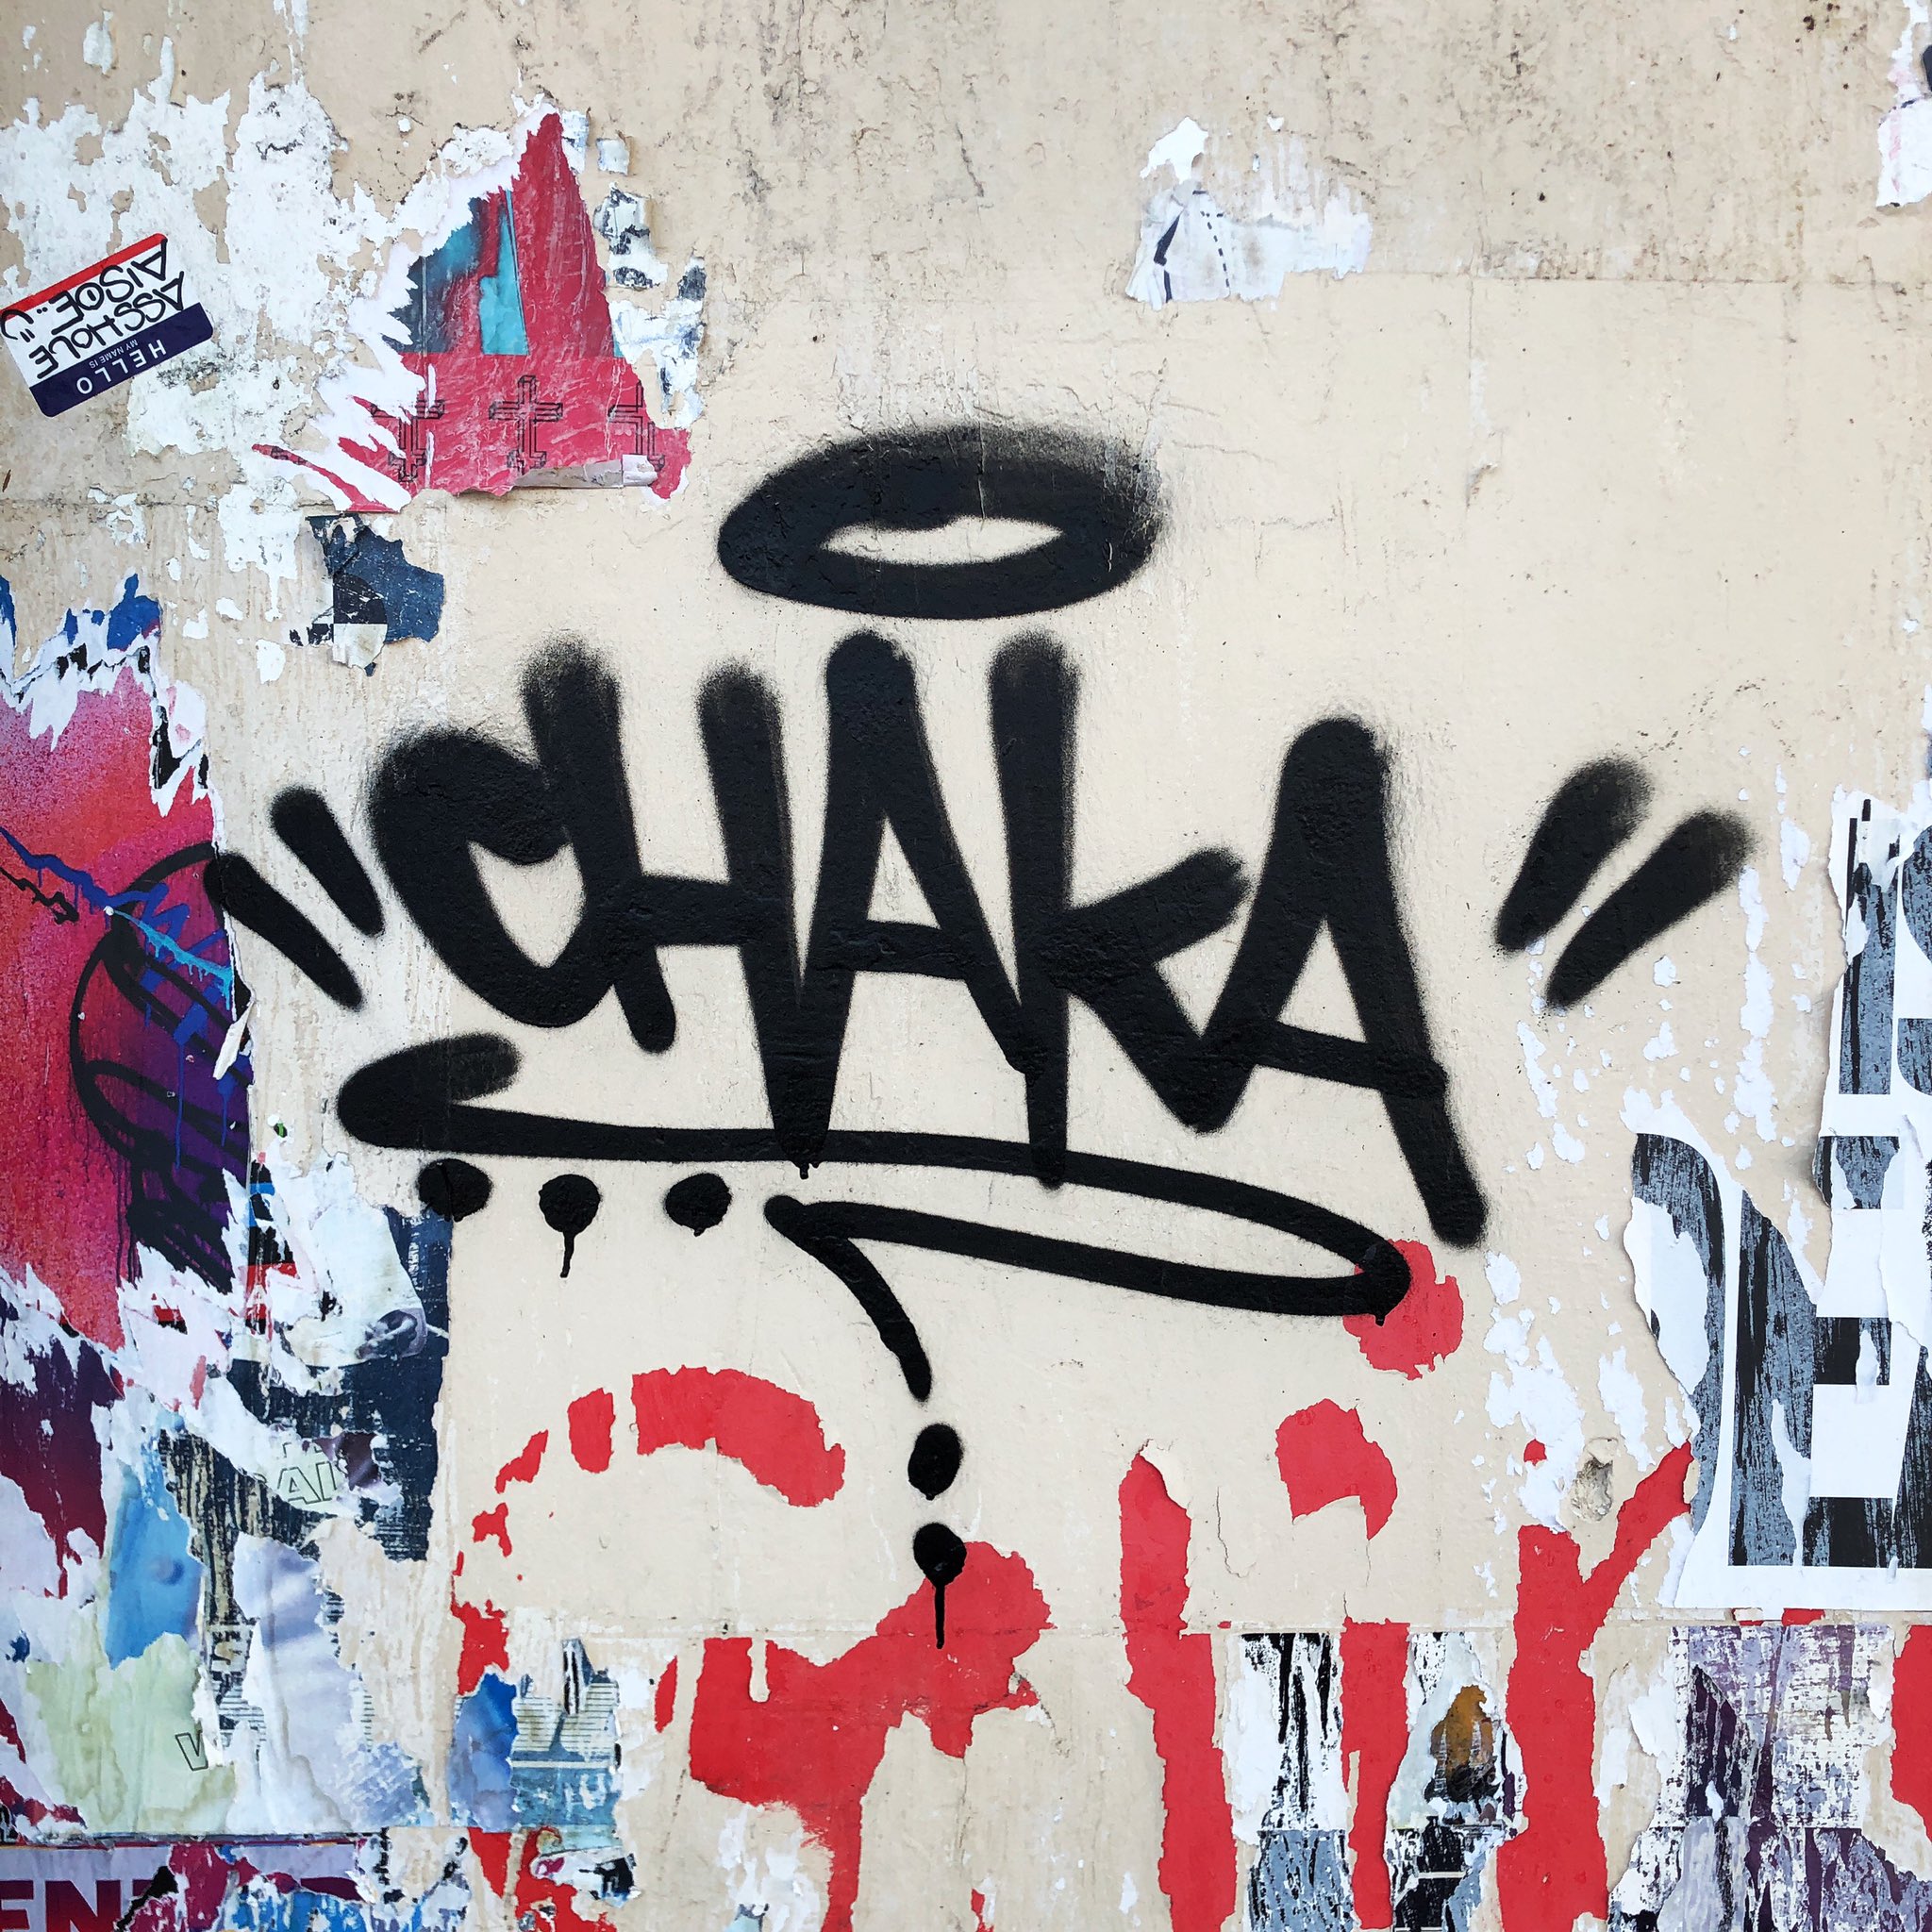 The Graffiti Hunter Daniel Chaka Ramos Chaka La Streetart East4thplace Laartsdistrict Dtla T Co Dxcb3zcf8d T Co Pf5iafkgnn Twitter